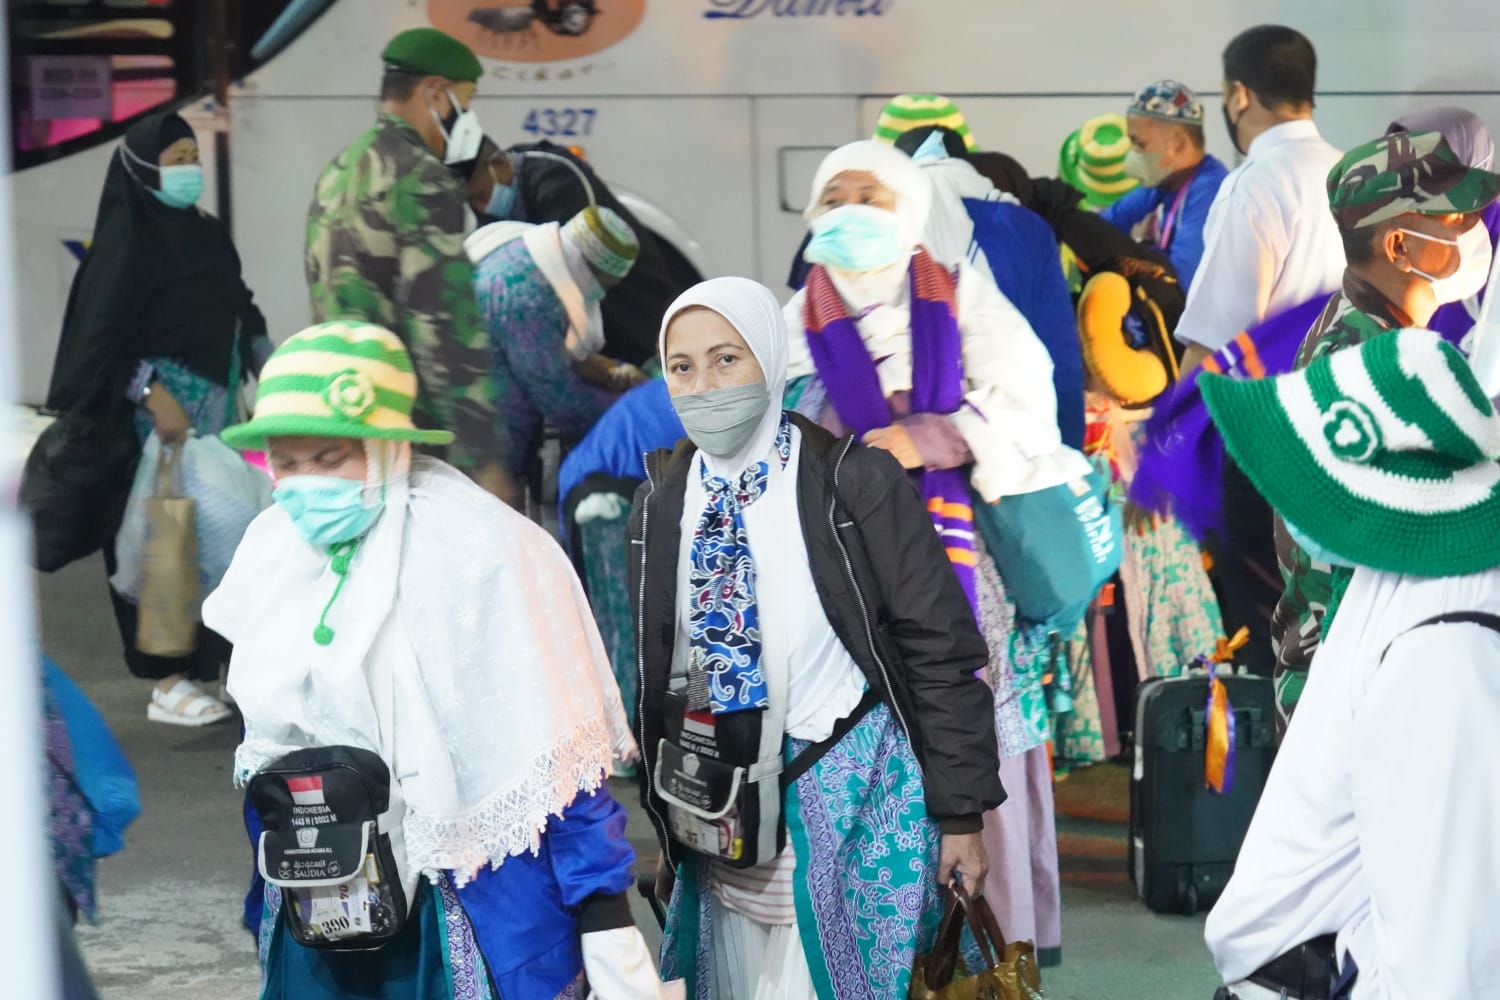 Kemenag Rilis Nama Jemaah Berhak Lunasi Biaya Haji 2023, Ini Daftarnya